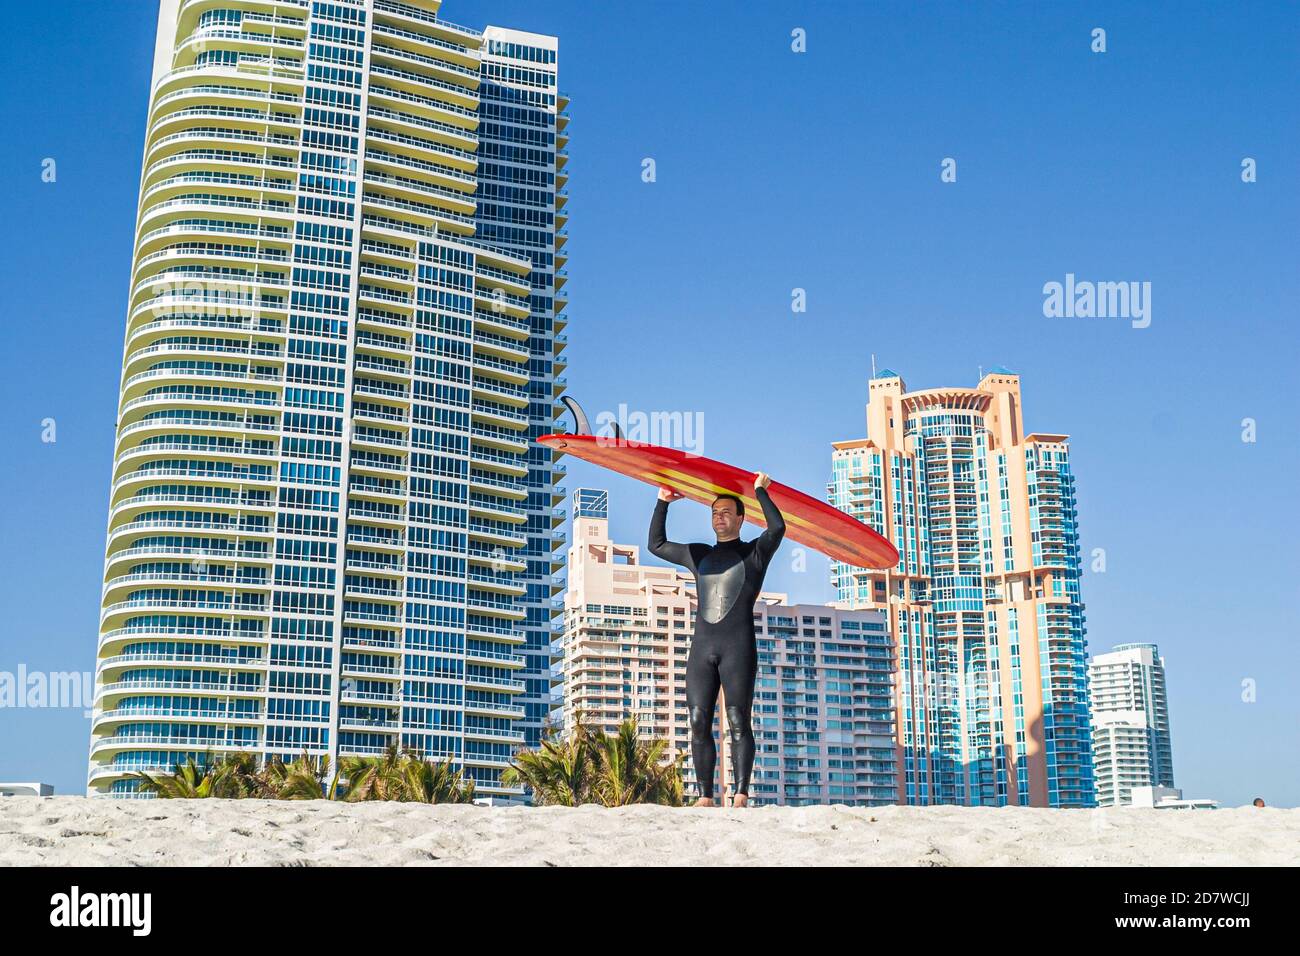 Miami Beach Florida,Atlantic Ocean seashore,station de maître-nageur surfeur homme surf tête d'équilibrage, bâtiment élevé bâtiments condominiums, résidences Banque D'Images